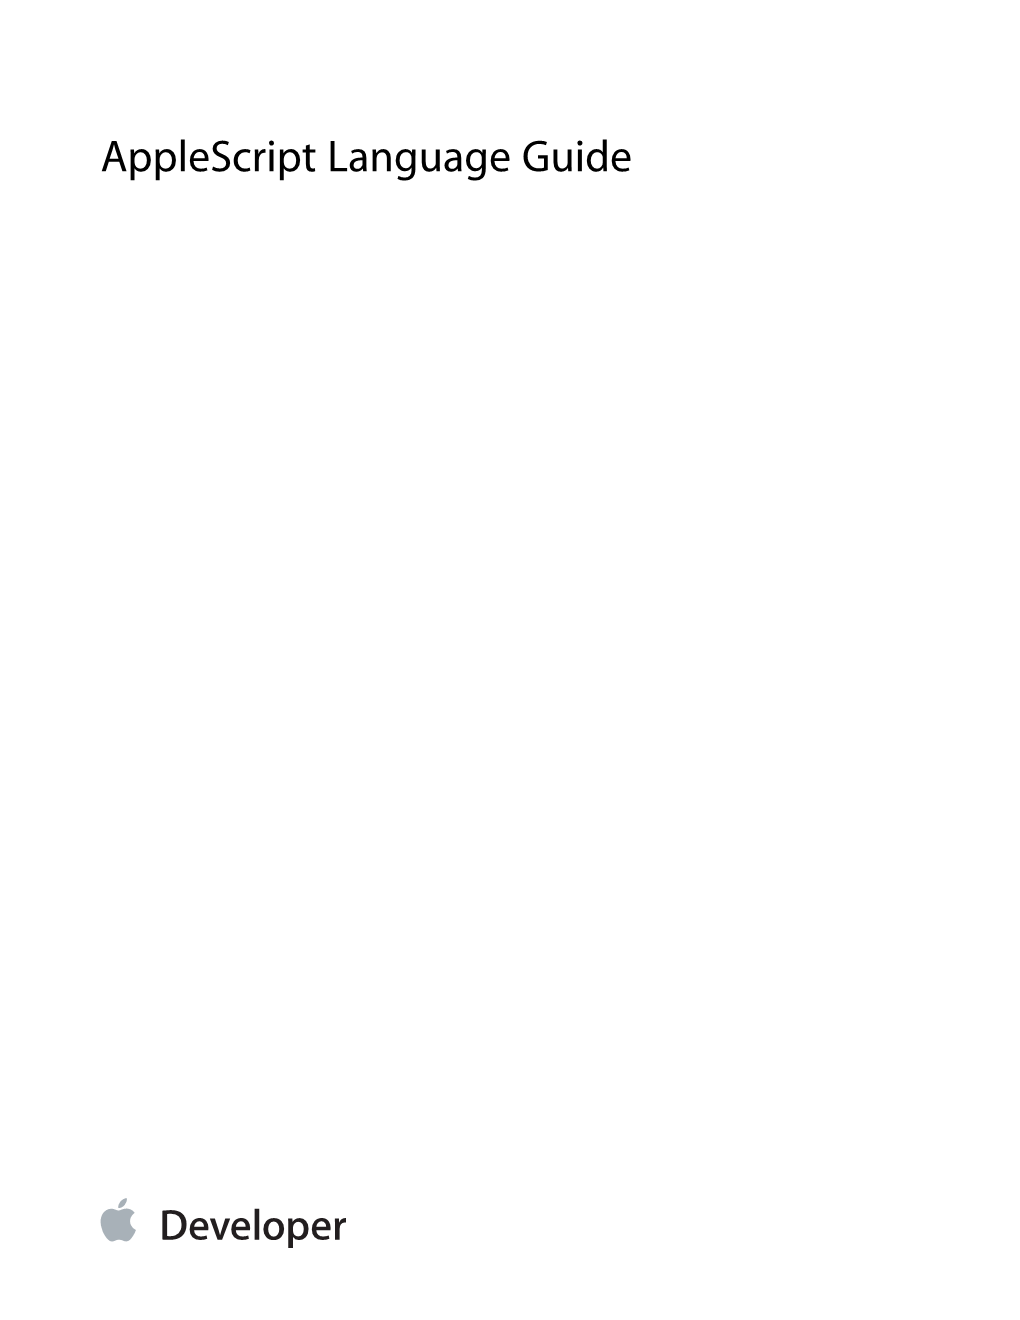 Applescript Language Guide Contents